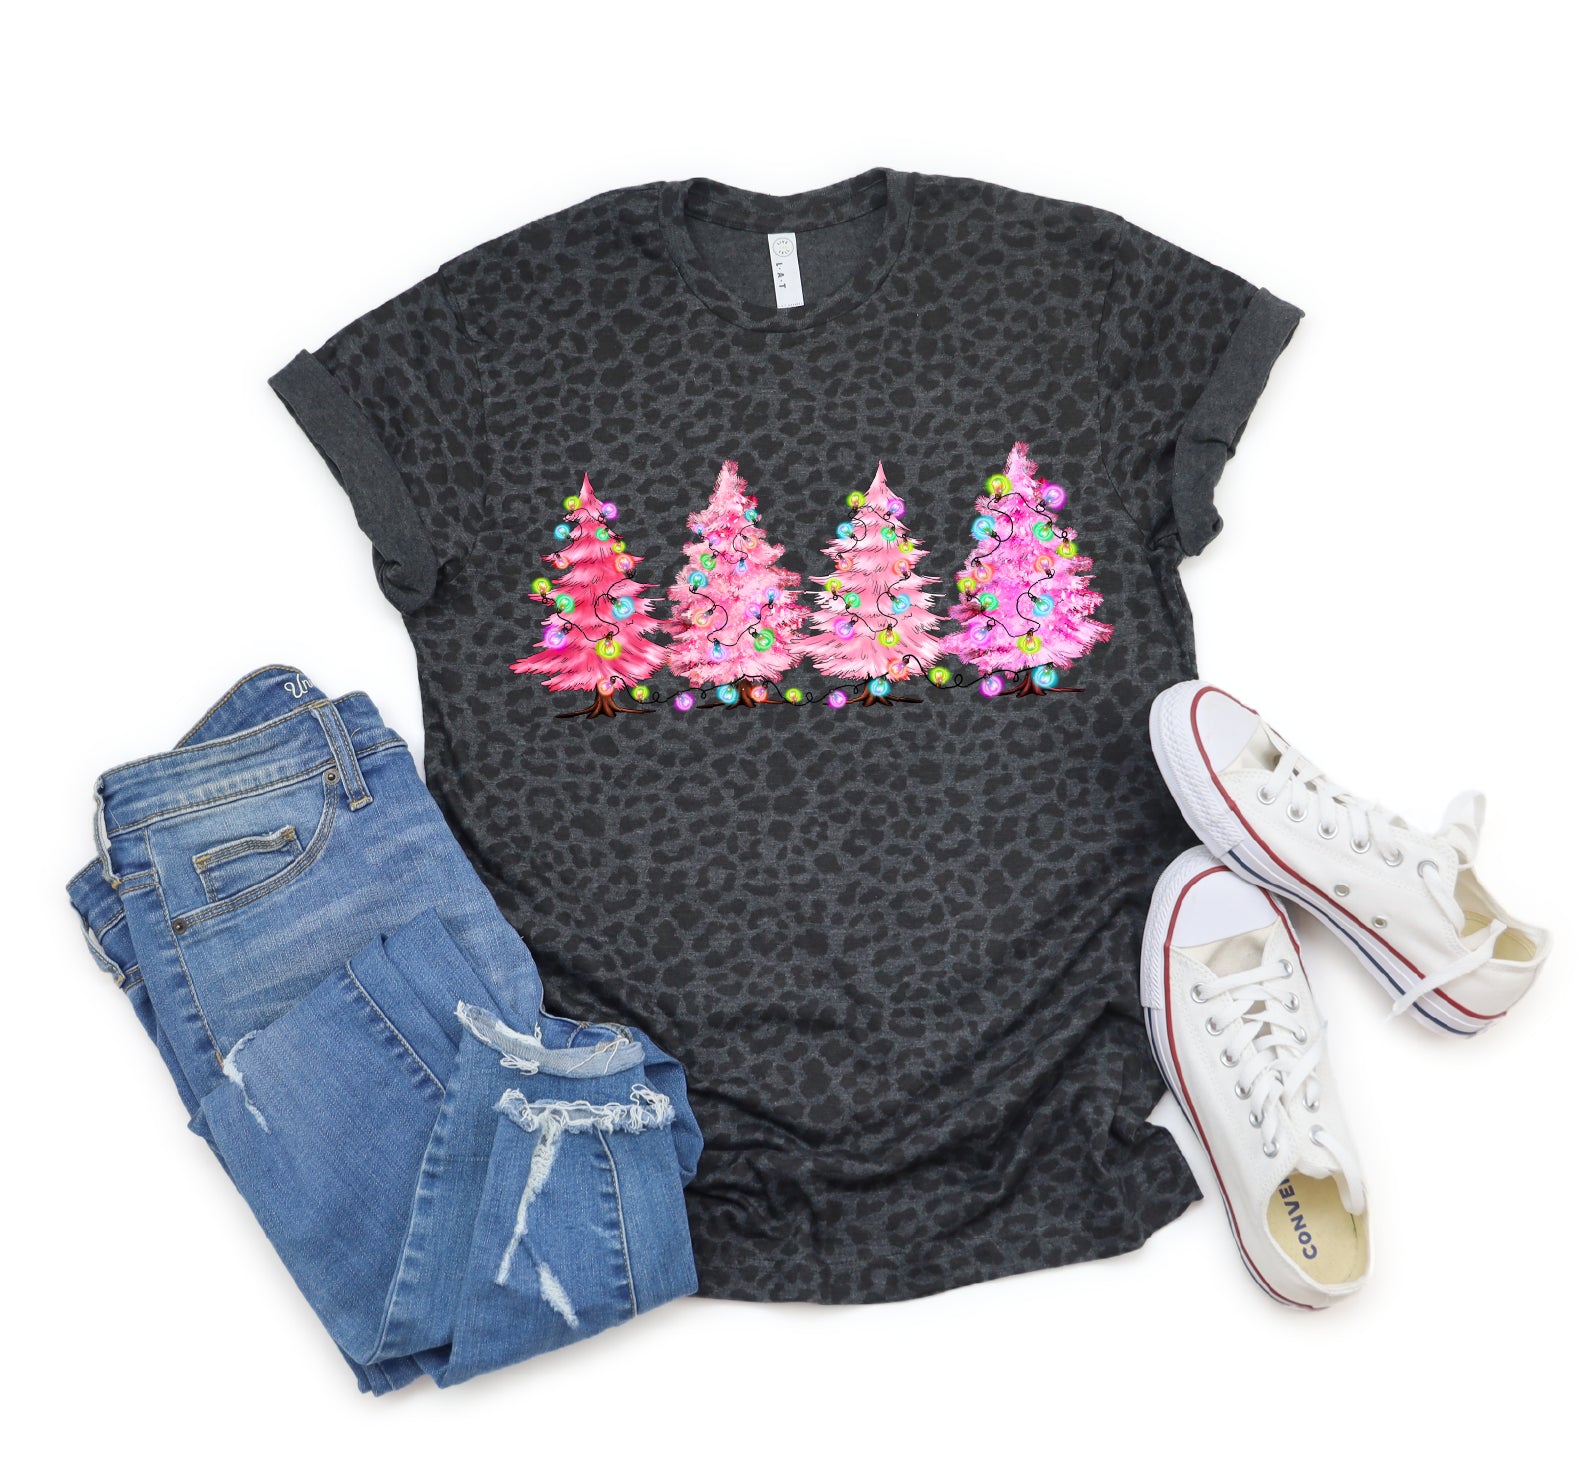  Chrismas Shirt Black Christmas Tree Pink Christmas